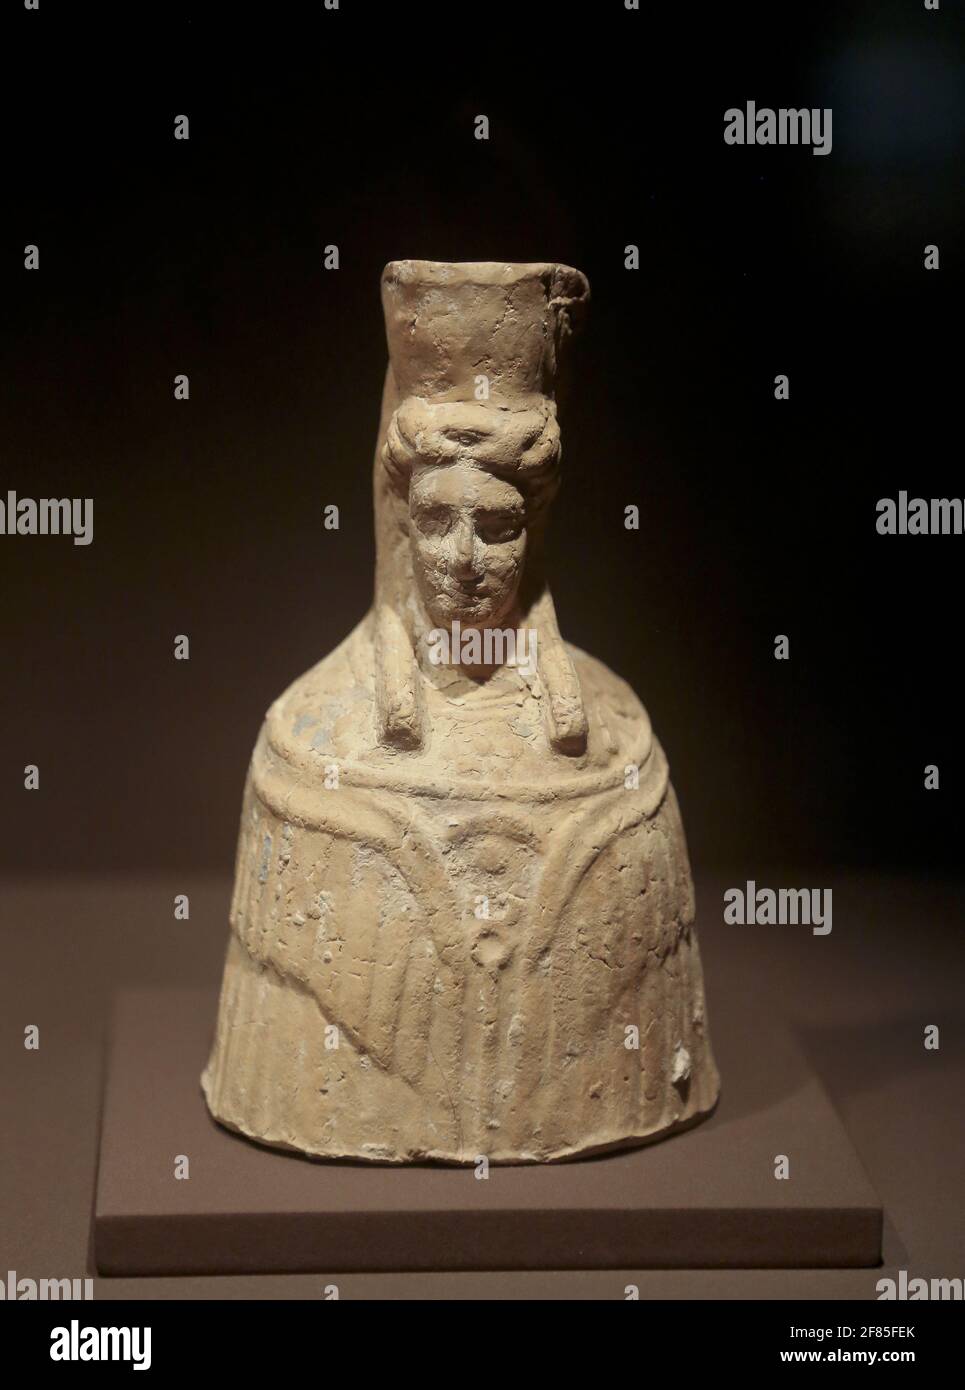 Büste von Tanit (oder Demeter). 4. - 3. Jahrhundert v. Chr. Terracotta.Es Culleram, Eivissa. Archäologisches Museum von Katalonien, Barcelona, Spanien. Stockfoto